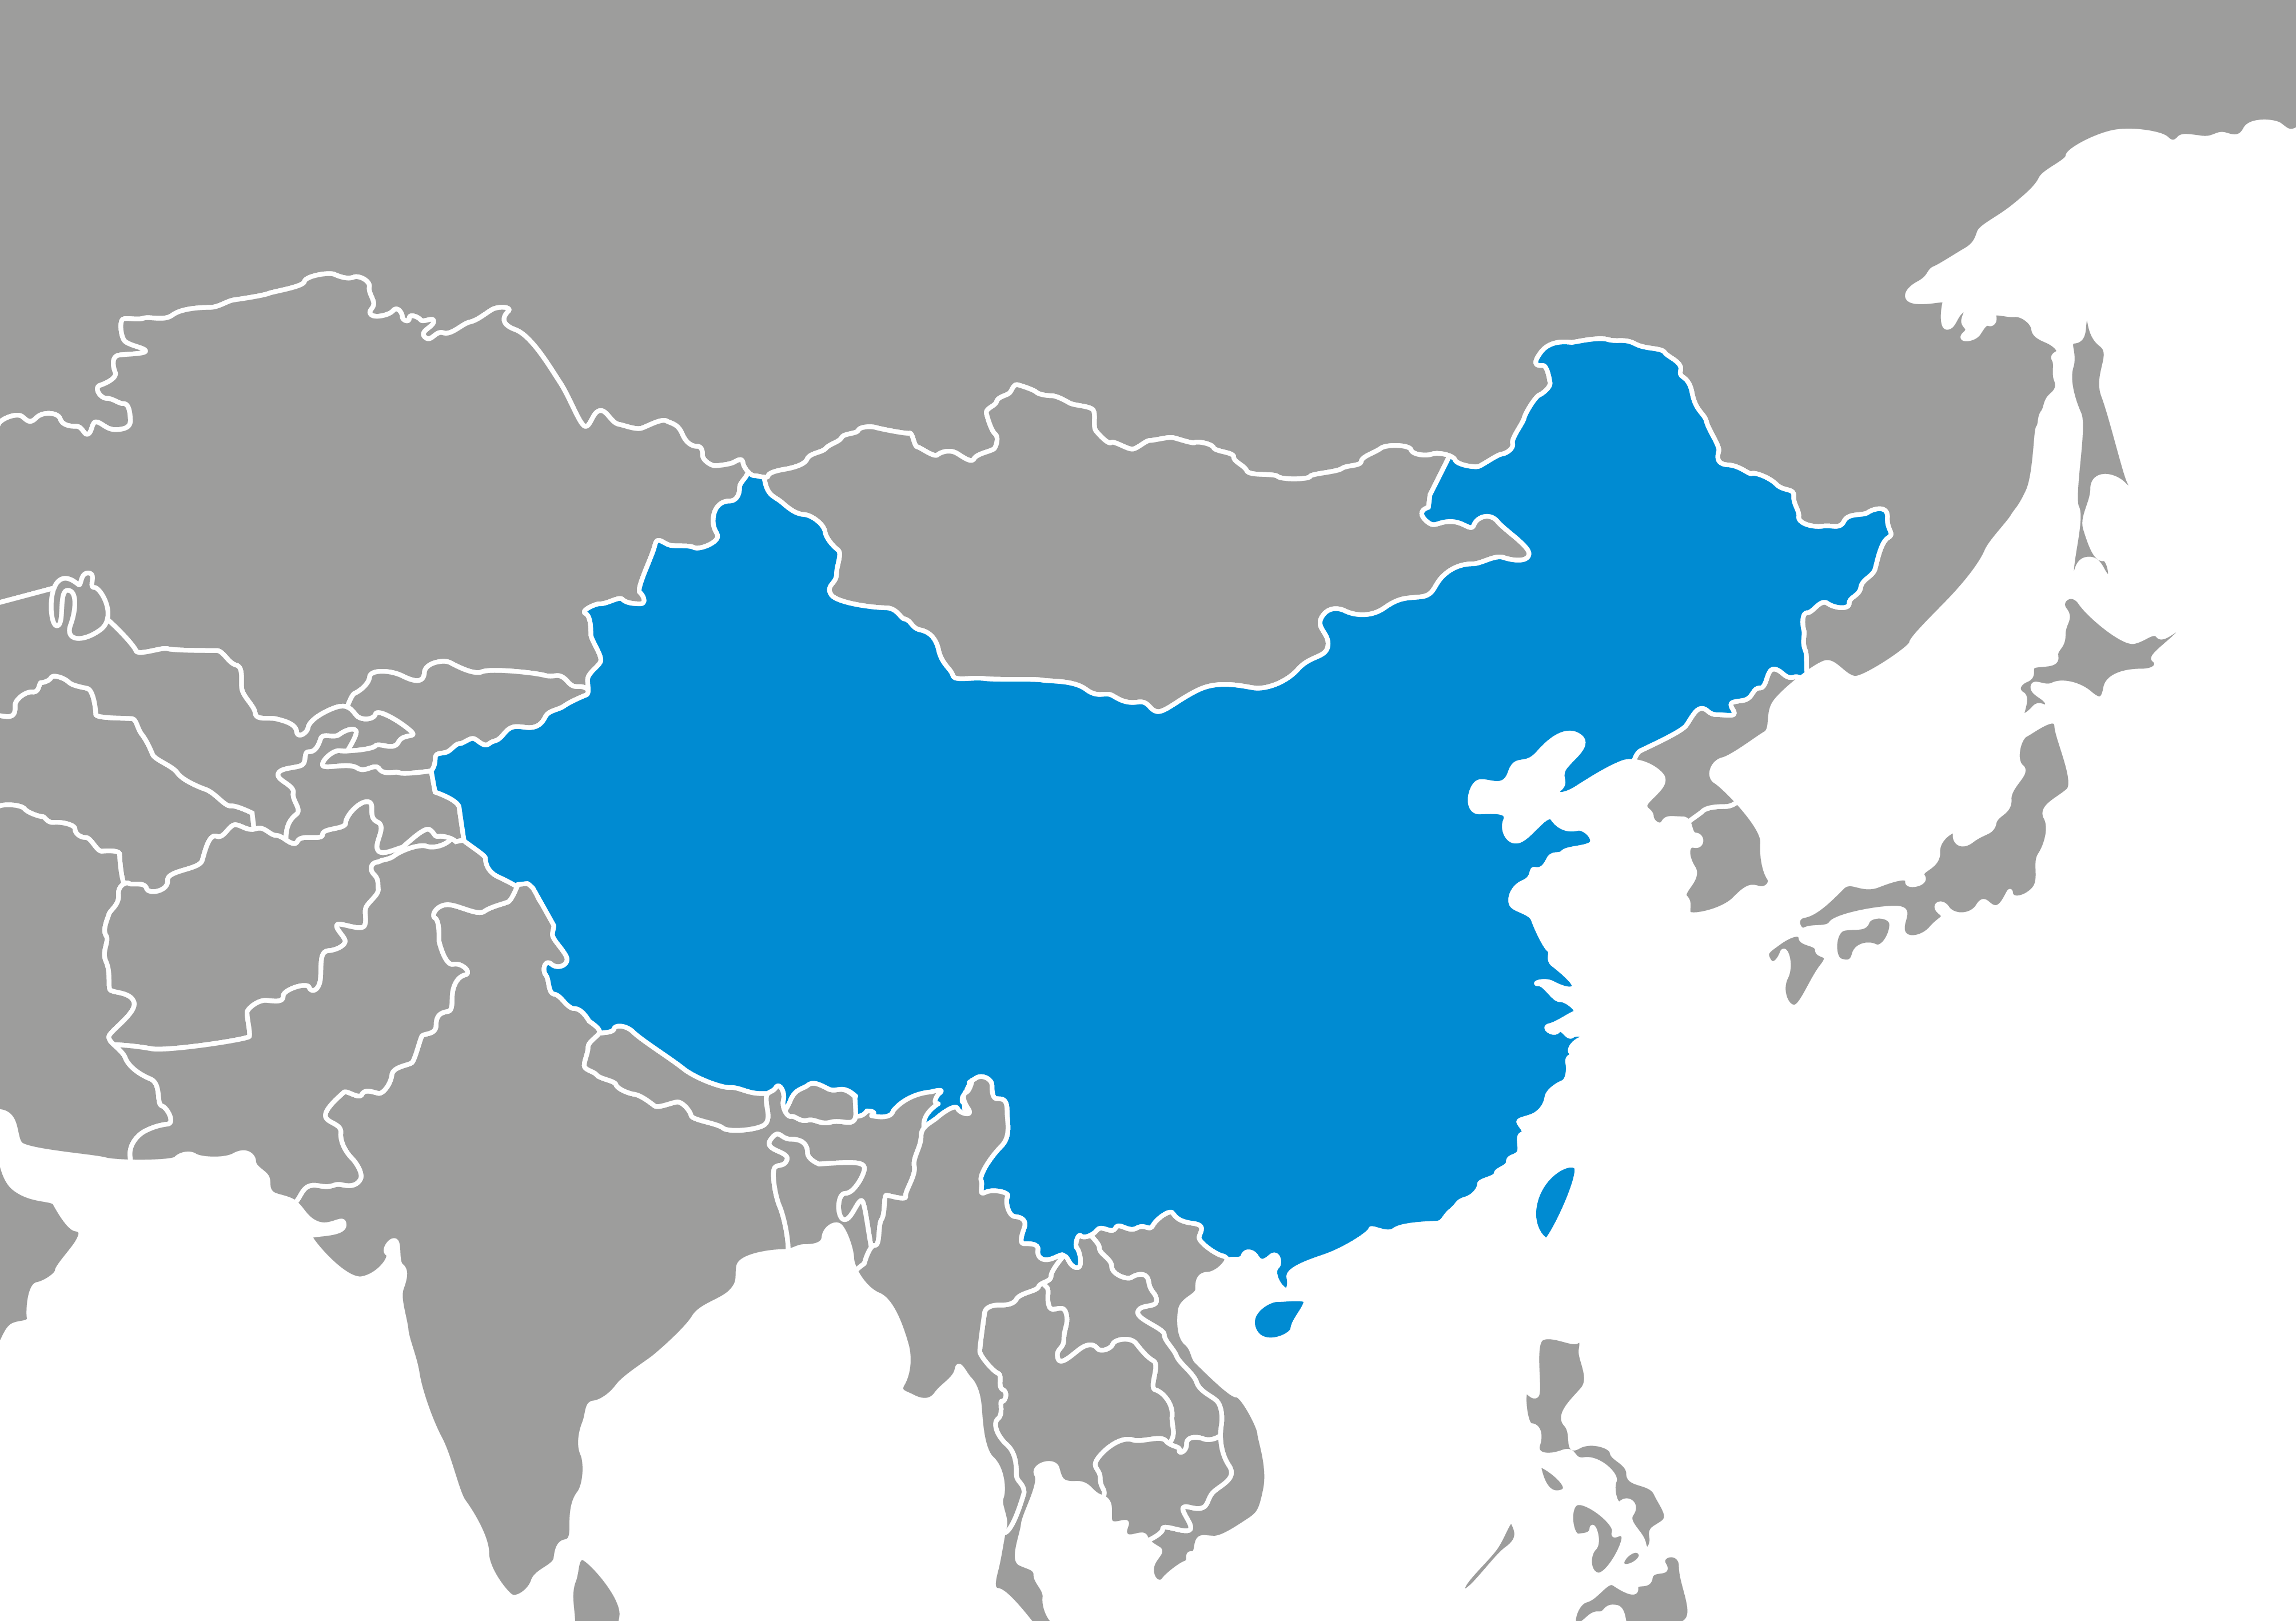 Mappa con focus sulla Cina